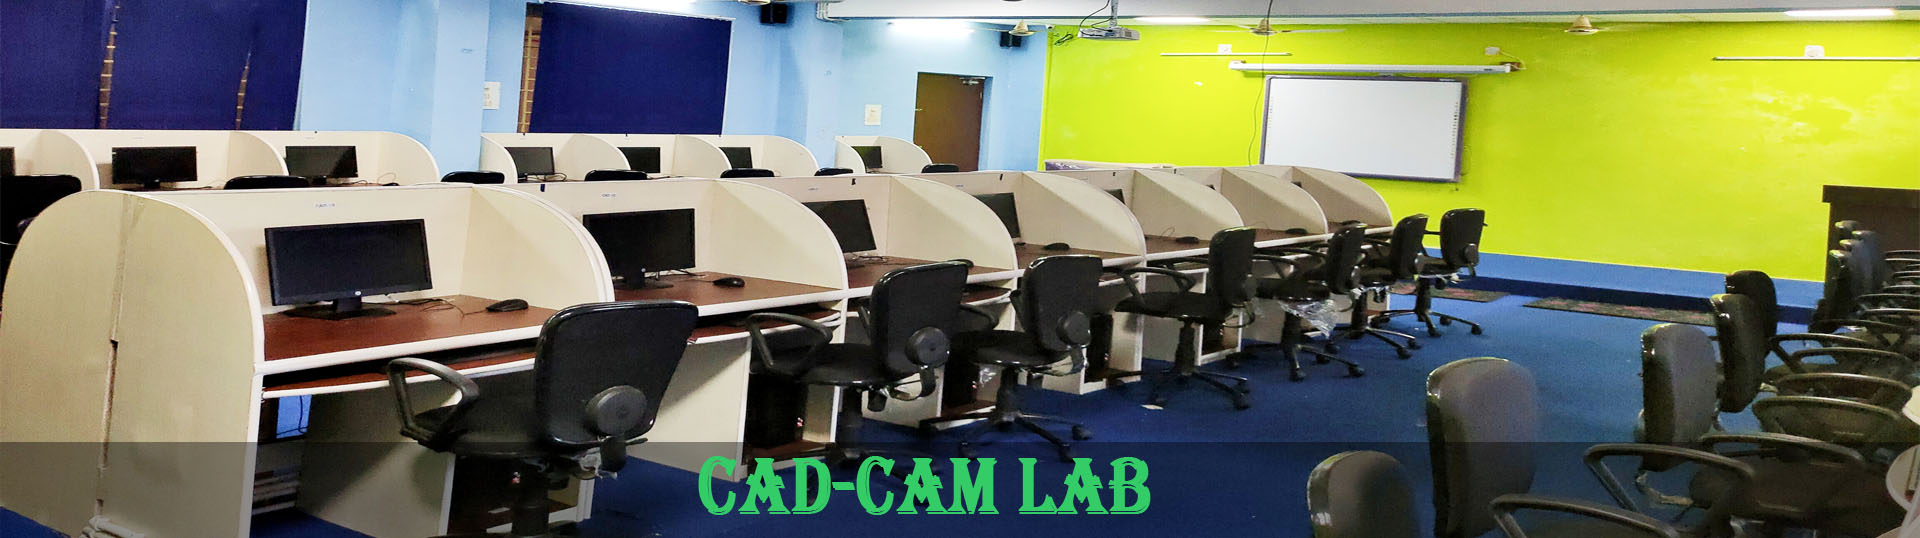 CAD-CAM LAB